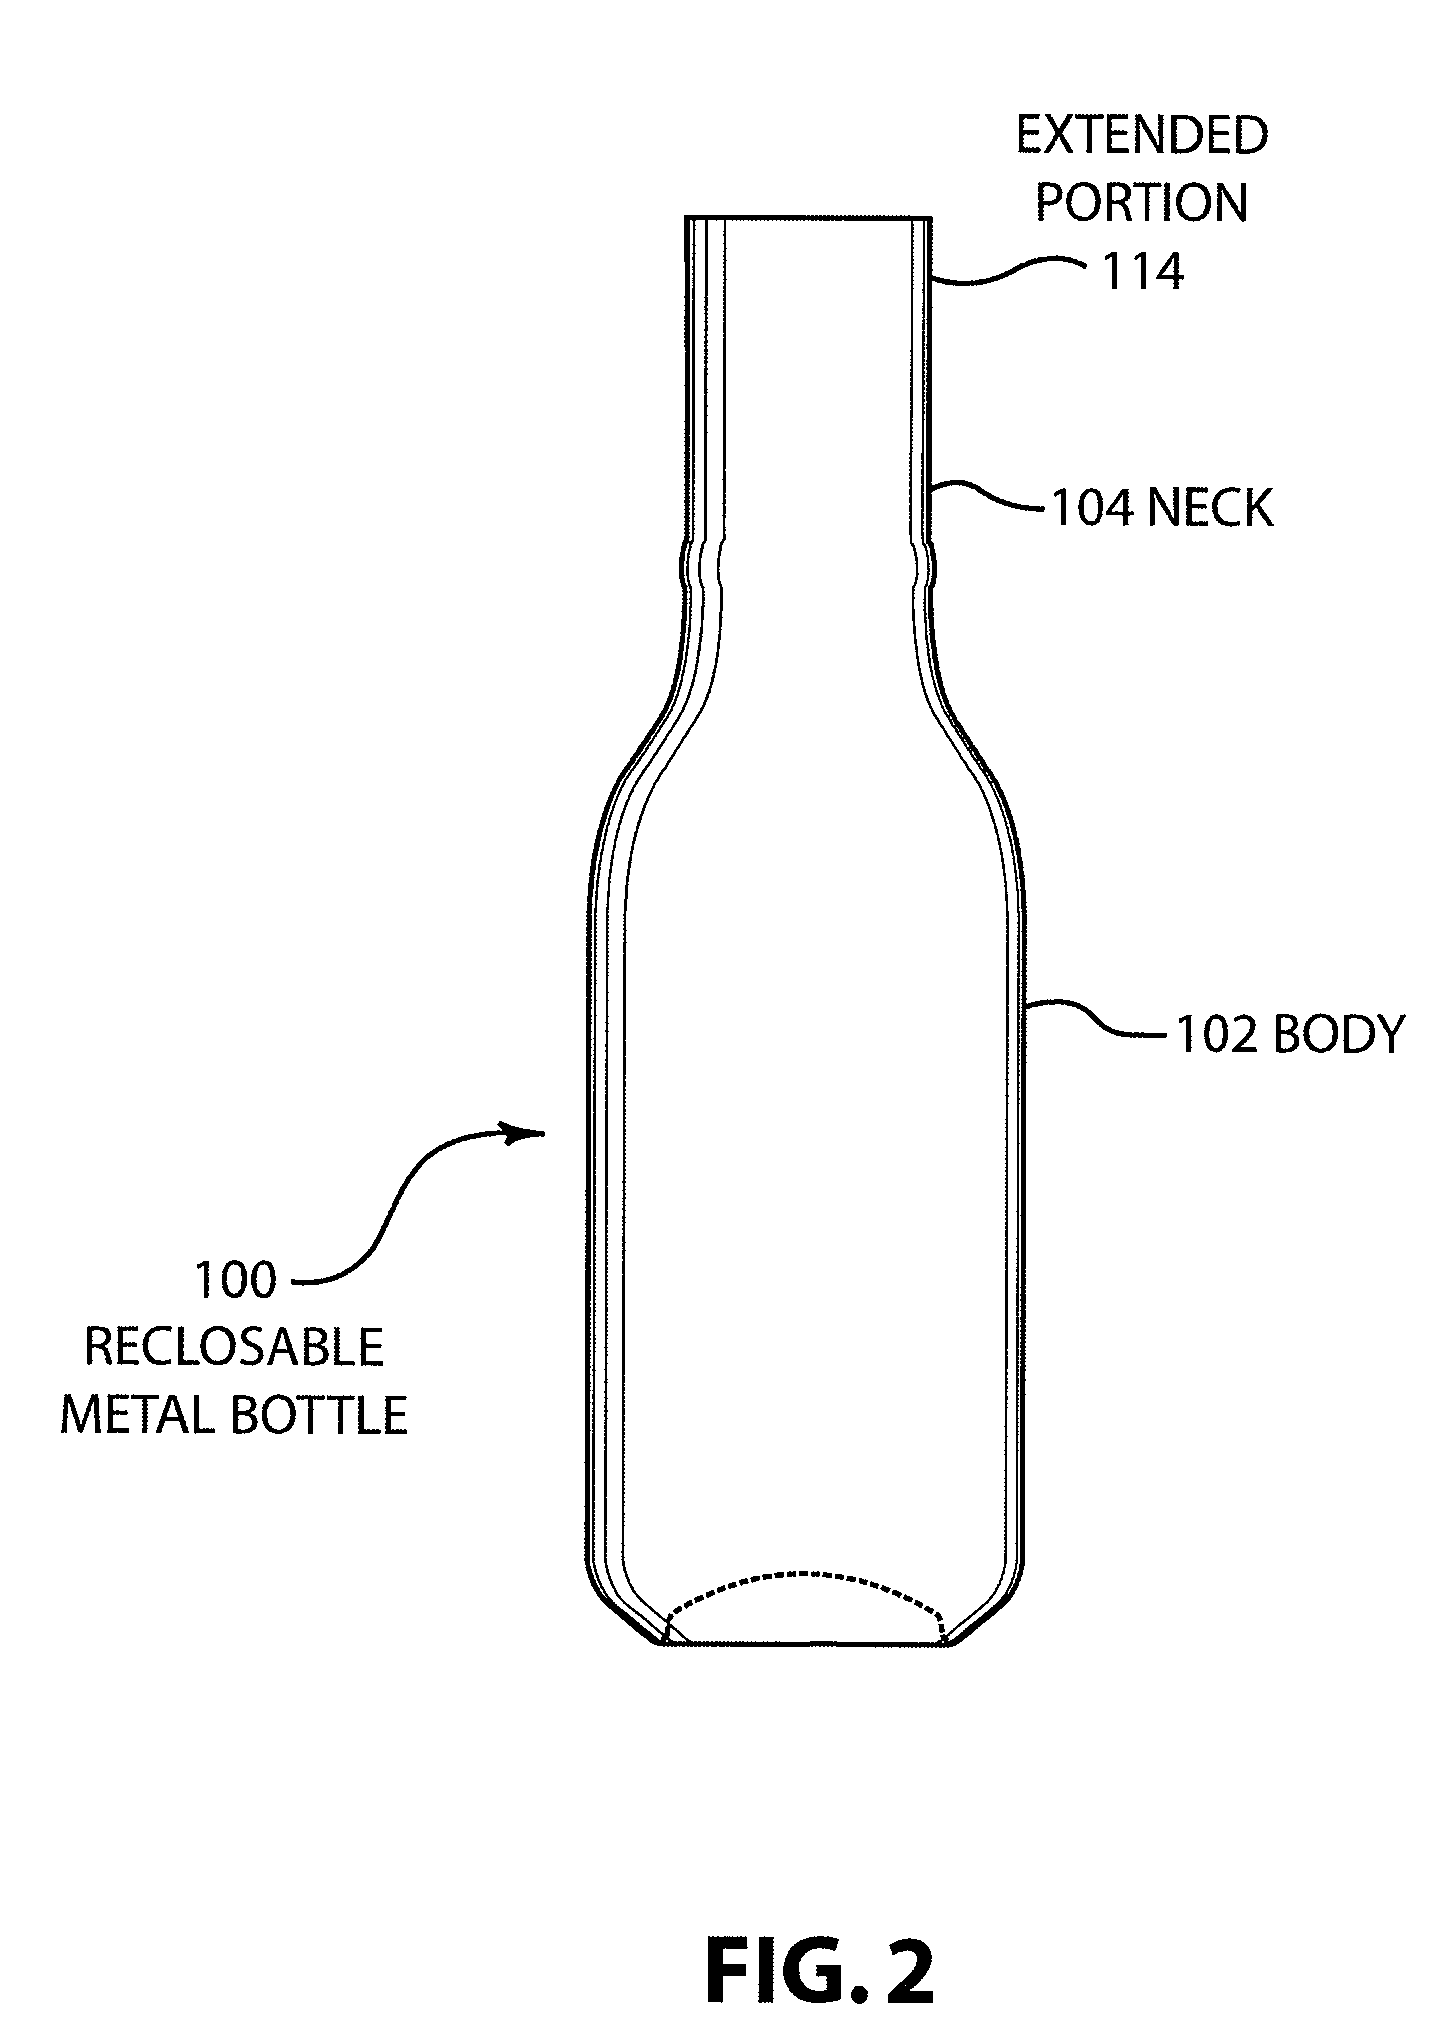 Reclosable metal bottle